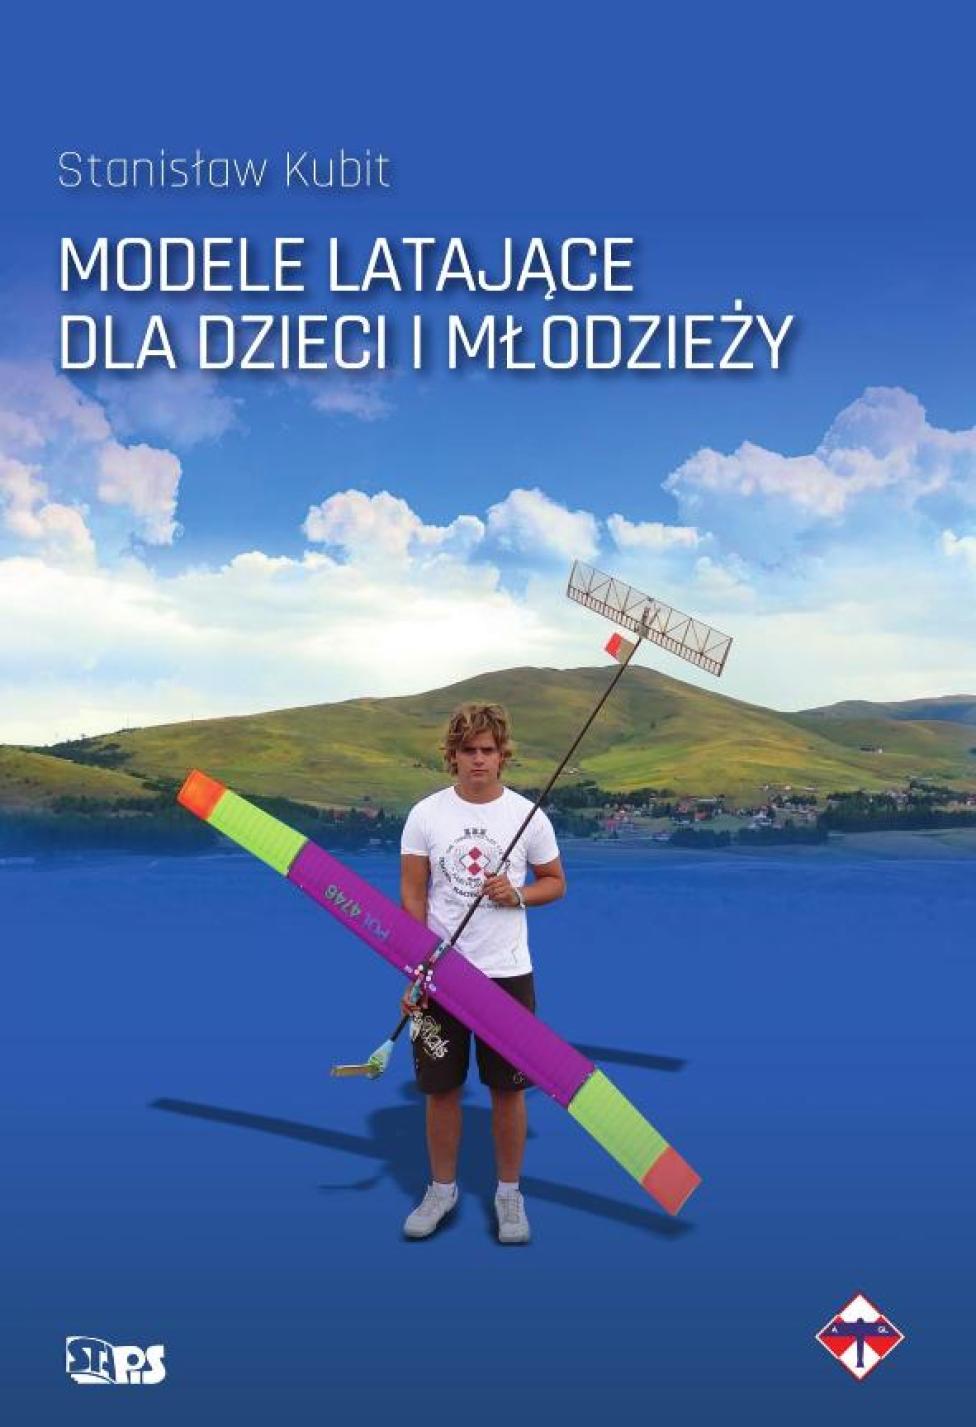 Książka „Modele latające dla dzieci i młodzieży” (fot. stapis.com.pl)